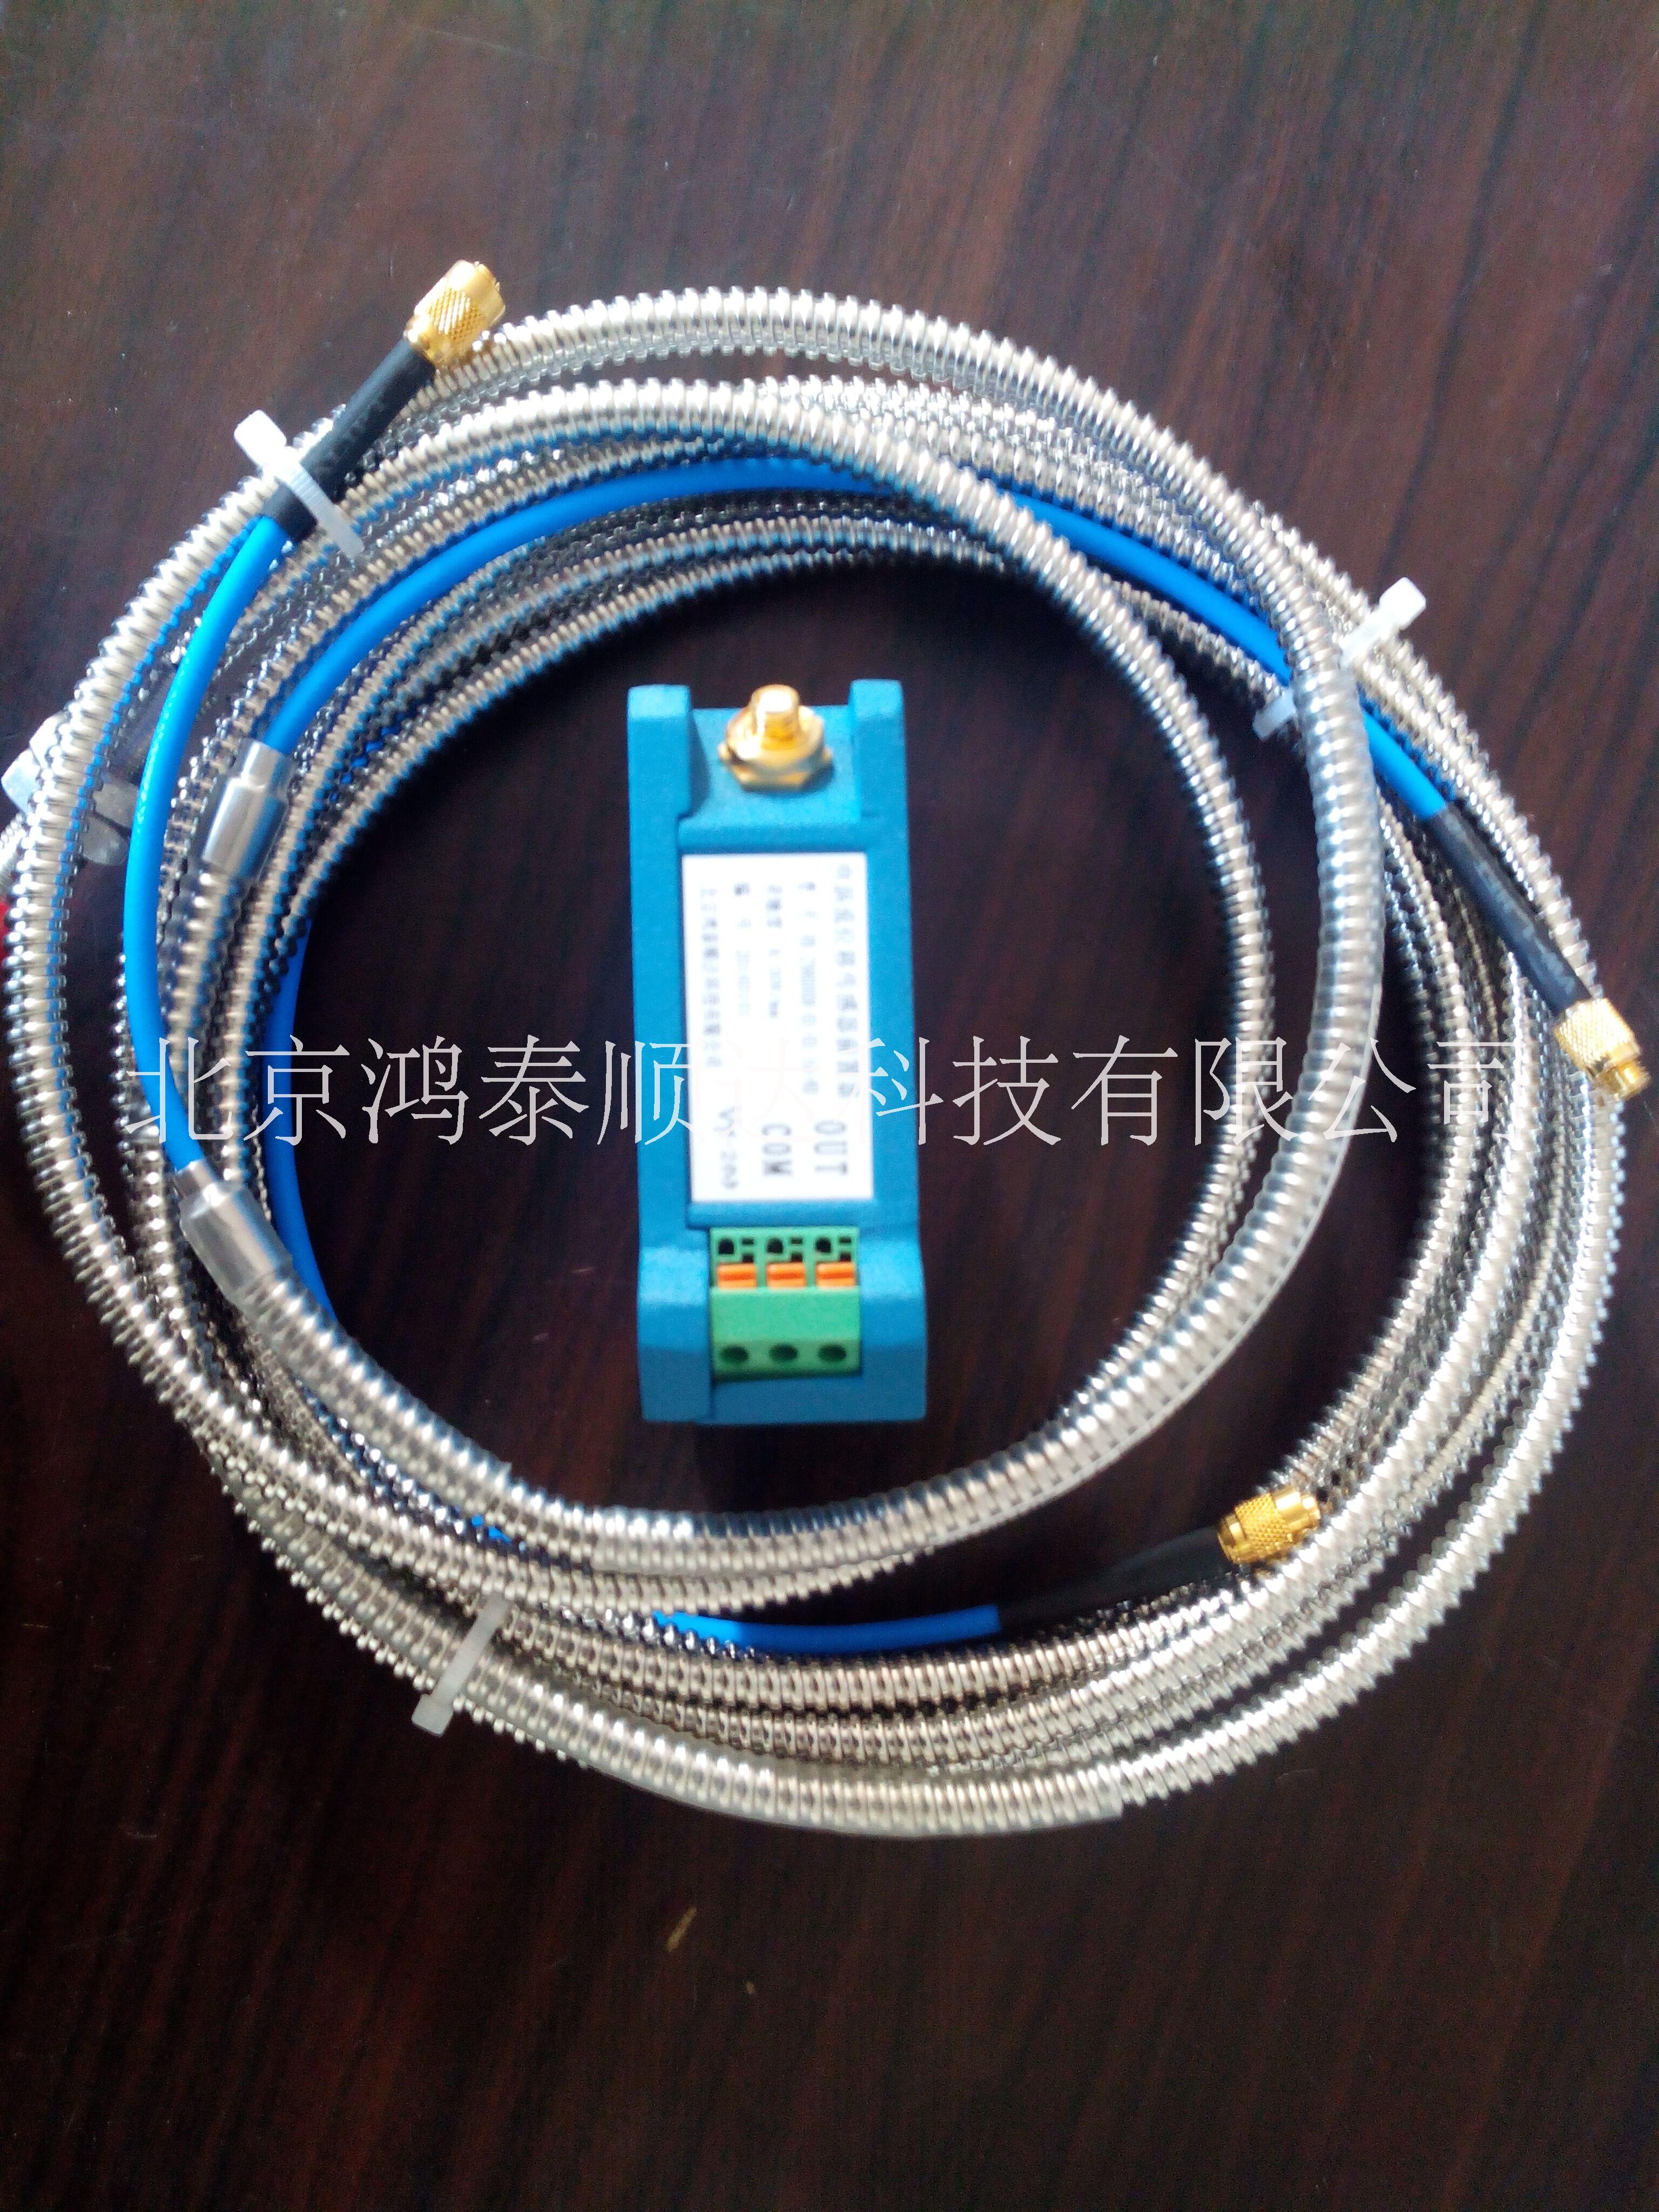 供应KH4100系列电涡流传感器质优价廉的产品由北京鸿泰顺达科技有限公司生产